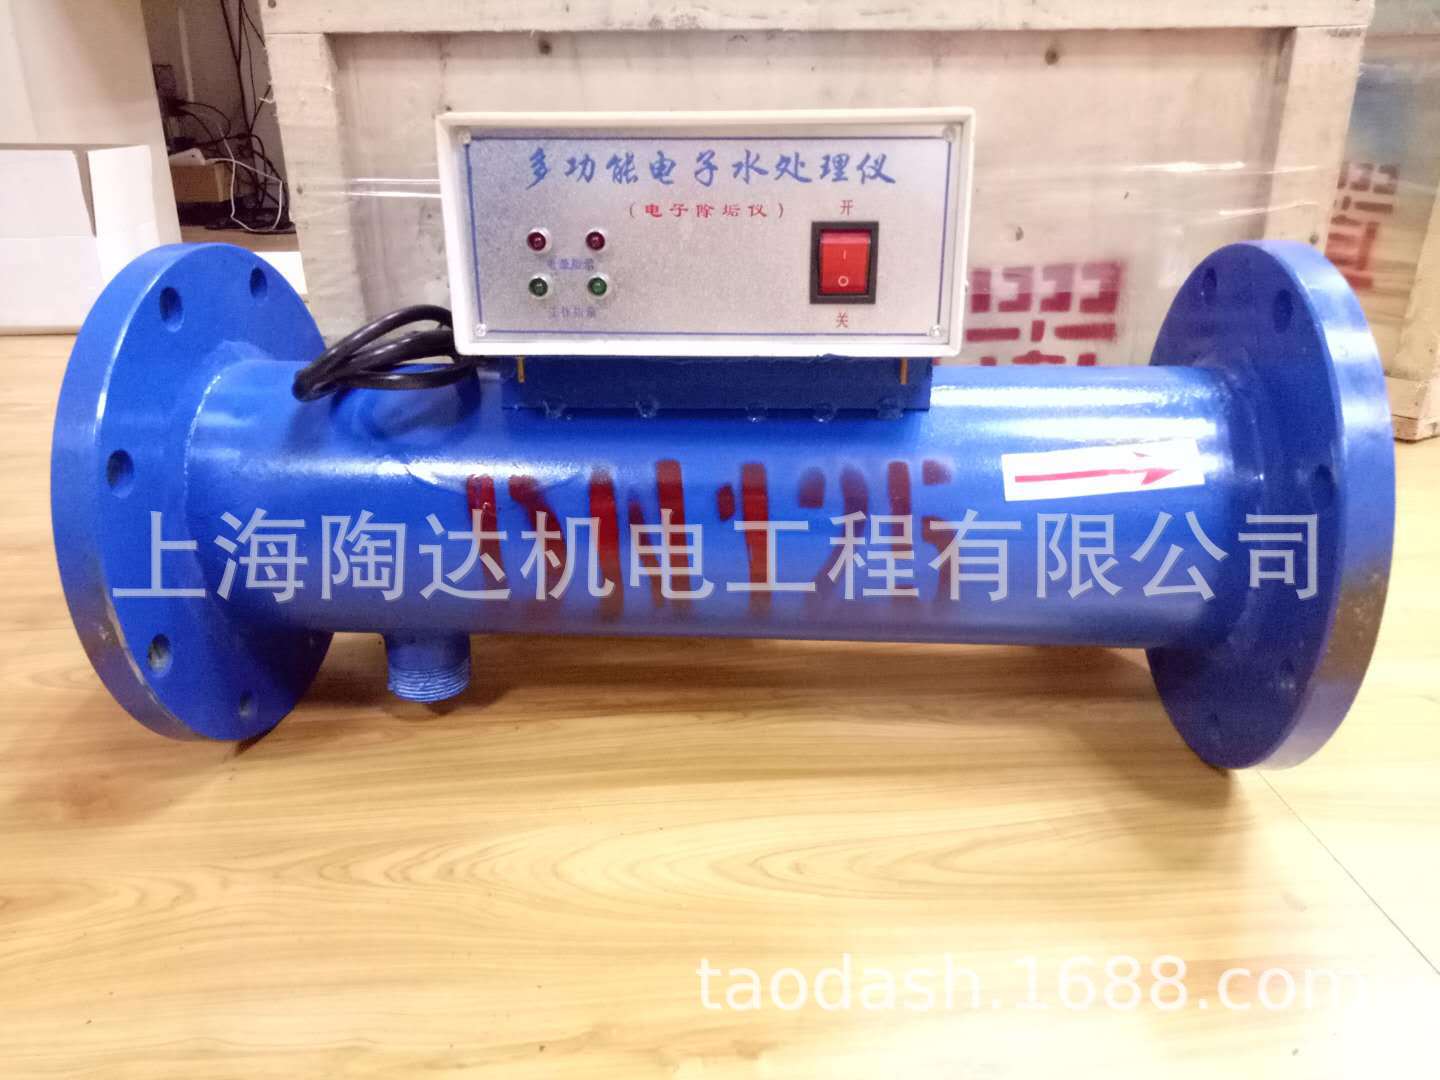 上海电子除垢仪  上海电子水处理器 厂家直销电子除垢仪 杀菌灭澡示例图3